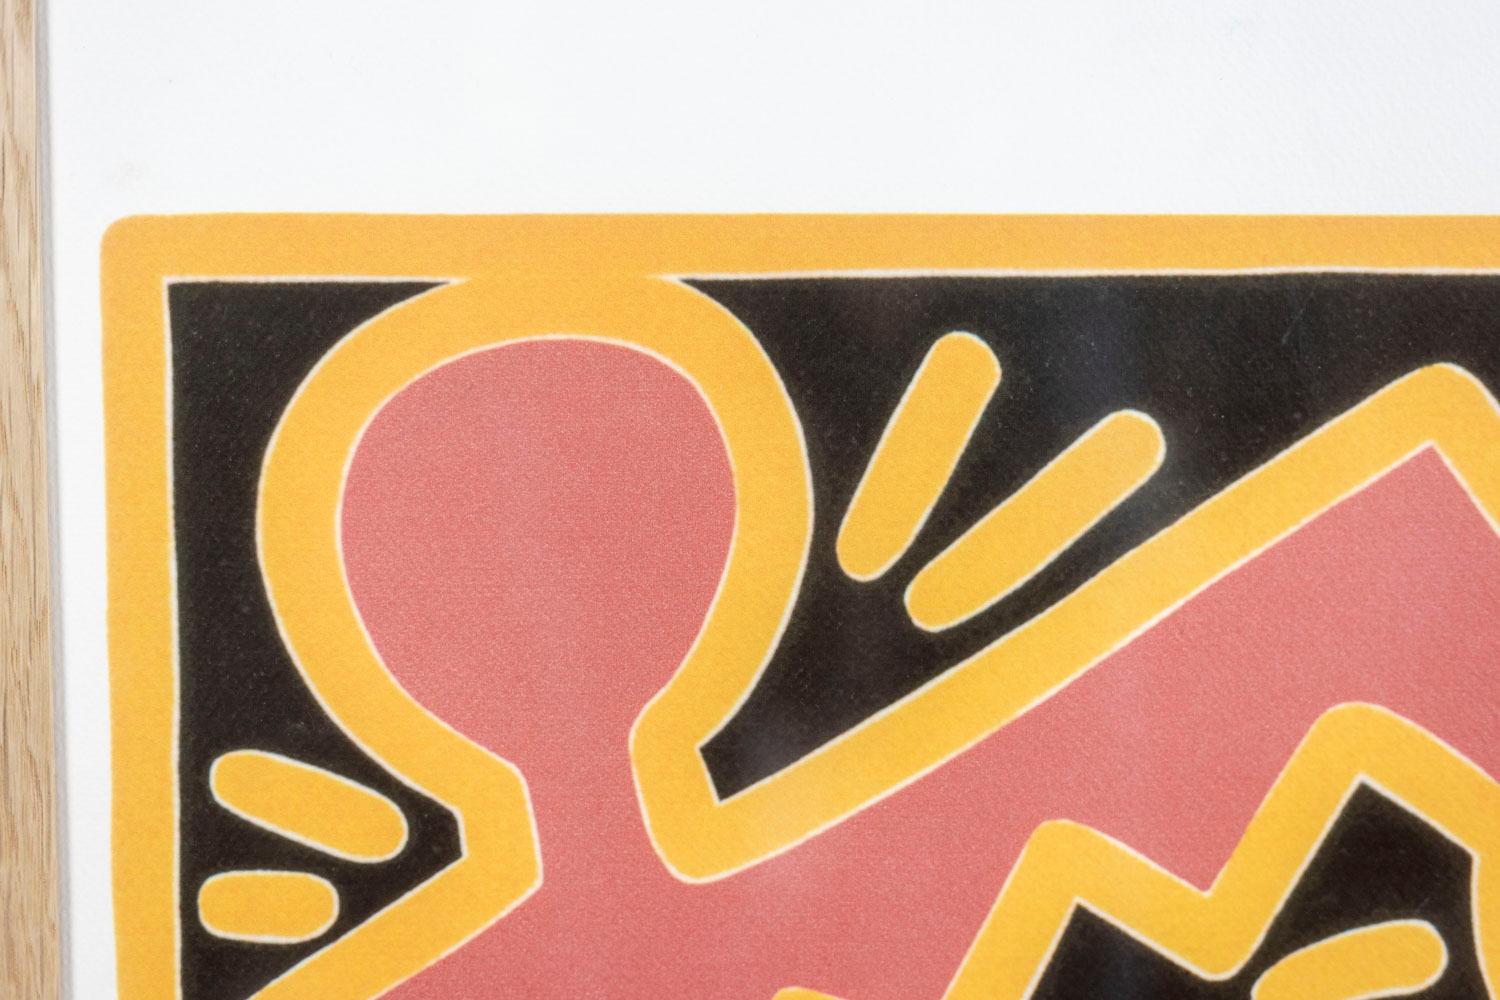 Keith Haring, signiert und nummeriert.

Abstrakter Siebdruck mit schematischen Figuren in hellroten, gelben und schwarzen Tönen in einem Rahmen aus blonder Eiche.

Nummeriert 70/150.

Amerikanische Arbeiten aus den 1990er Jahren.

Abmessungen: B 50